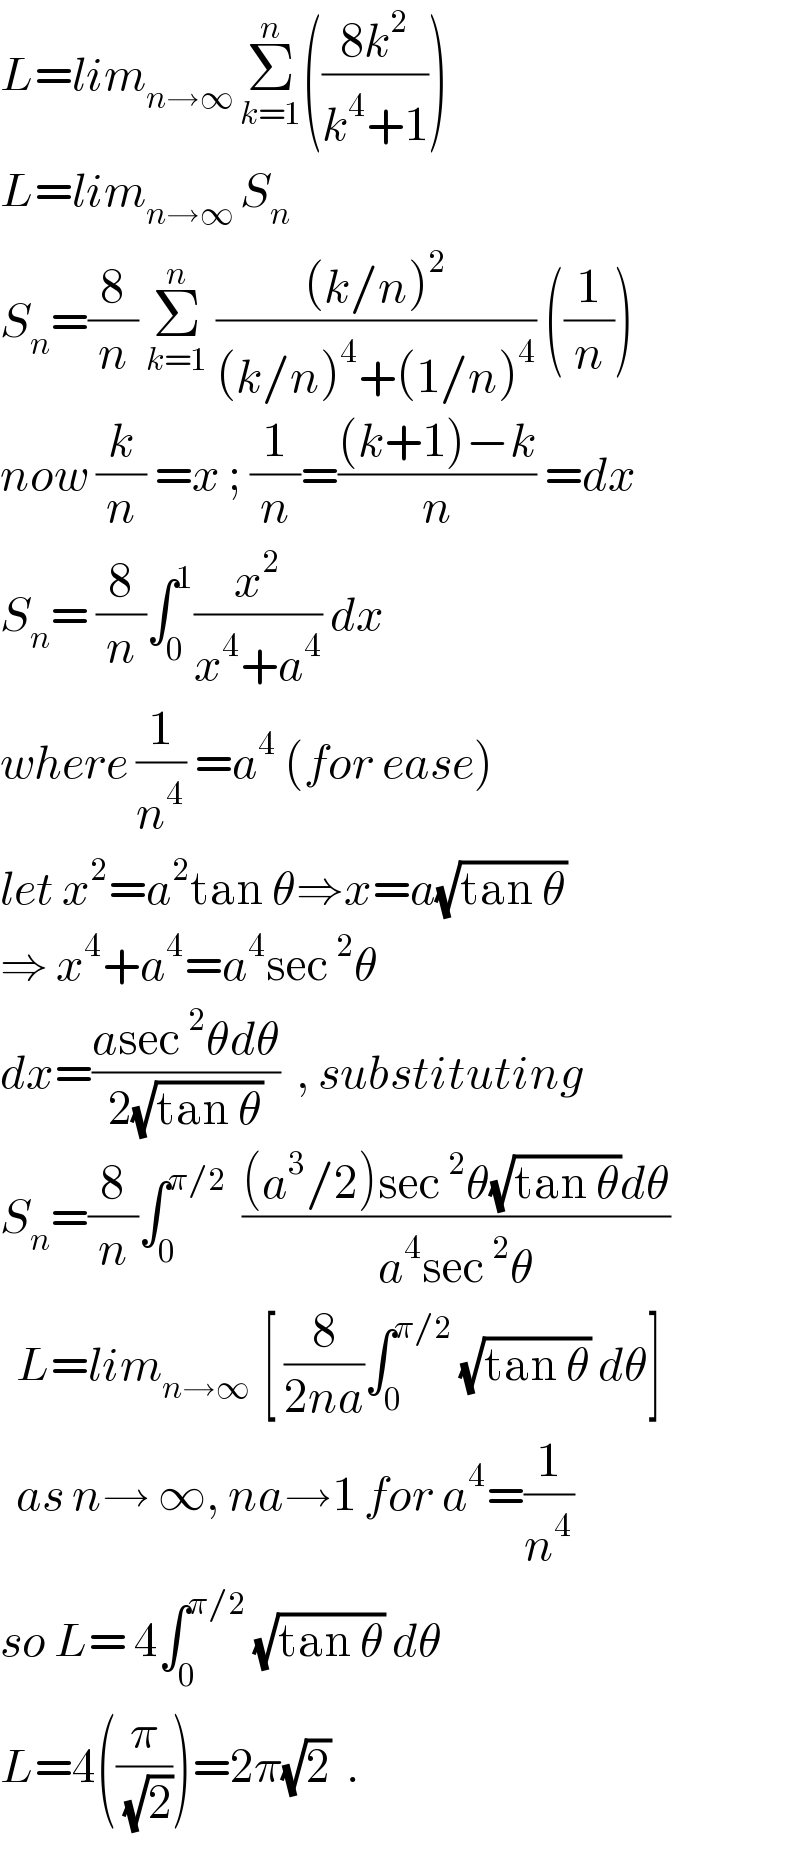 L=lim_(n→∞ ) Σ_(k=1) ^n (((8k^2 )/(k^4 +1)))  L=lim_(n→∞ ) S_n   S_n =(8/n) Σ_(k=1) ^n  (((k/n)^2 )/((k/n)^4 +(1/n)^4 )) ((1/n))  now (k/n) =x ; (1/n)=(((k+1)−k)/n) =dx  S_n = (8/n)∫_0 ^1 (x^2 /(x^4 +a^4 )) dx   where (1/n^4 ) =a^4  (for ease)  let x^2 =a^2 tan θ⇒x=a(√(tan θ))  ⇒ x^4 +a^4 =a^4 sec^2 θ  dx=((asec^2 θdθ)/(2(√(tan θ))))  , substituting  S_n =(8/n)∫_0 ^(π/2)   (((a^3 /2)sec^2 θ(√(tan θ))dθ)/(a^4 sec^2 θ))    L=lim_(n→∞  ) [ (8/(2na))∫_0 ^(π/2)  (√(tan θ)) dθ]    as n→ ∞, na→1 for a^4 =(1/n^4 )  so L= 4∫_0 ^(π/2)  (√(tan θ)) dθ  L=4((π/(√2)))=2π(√2)  .  